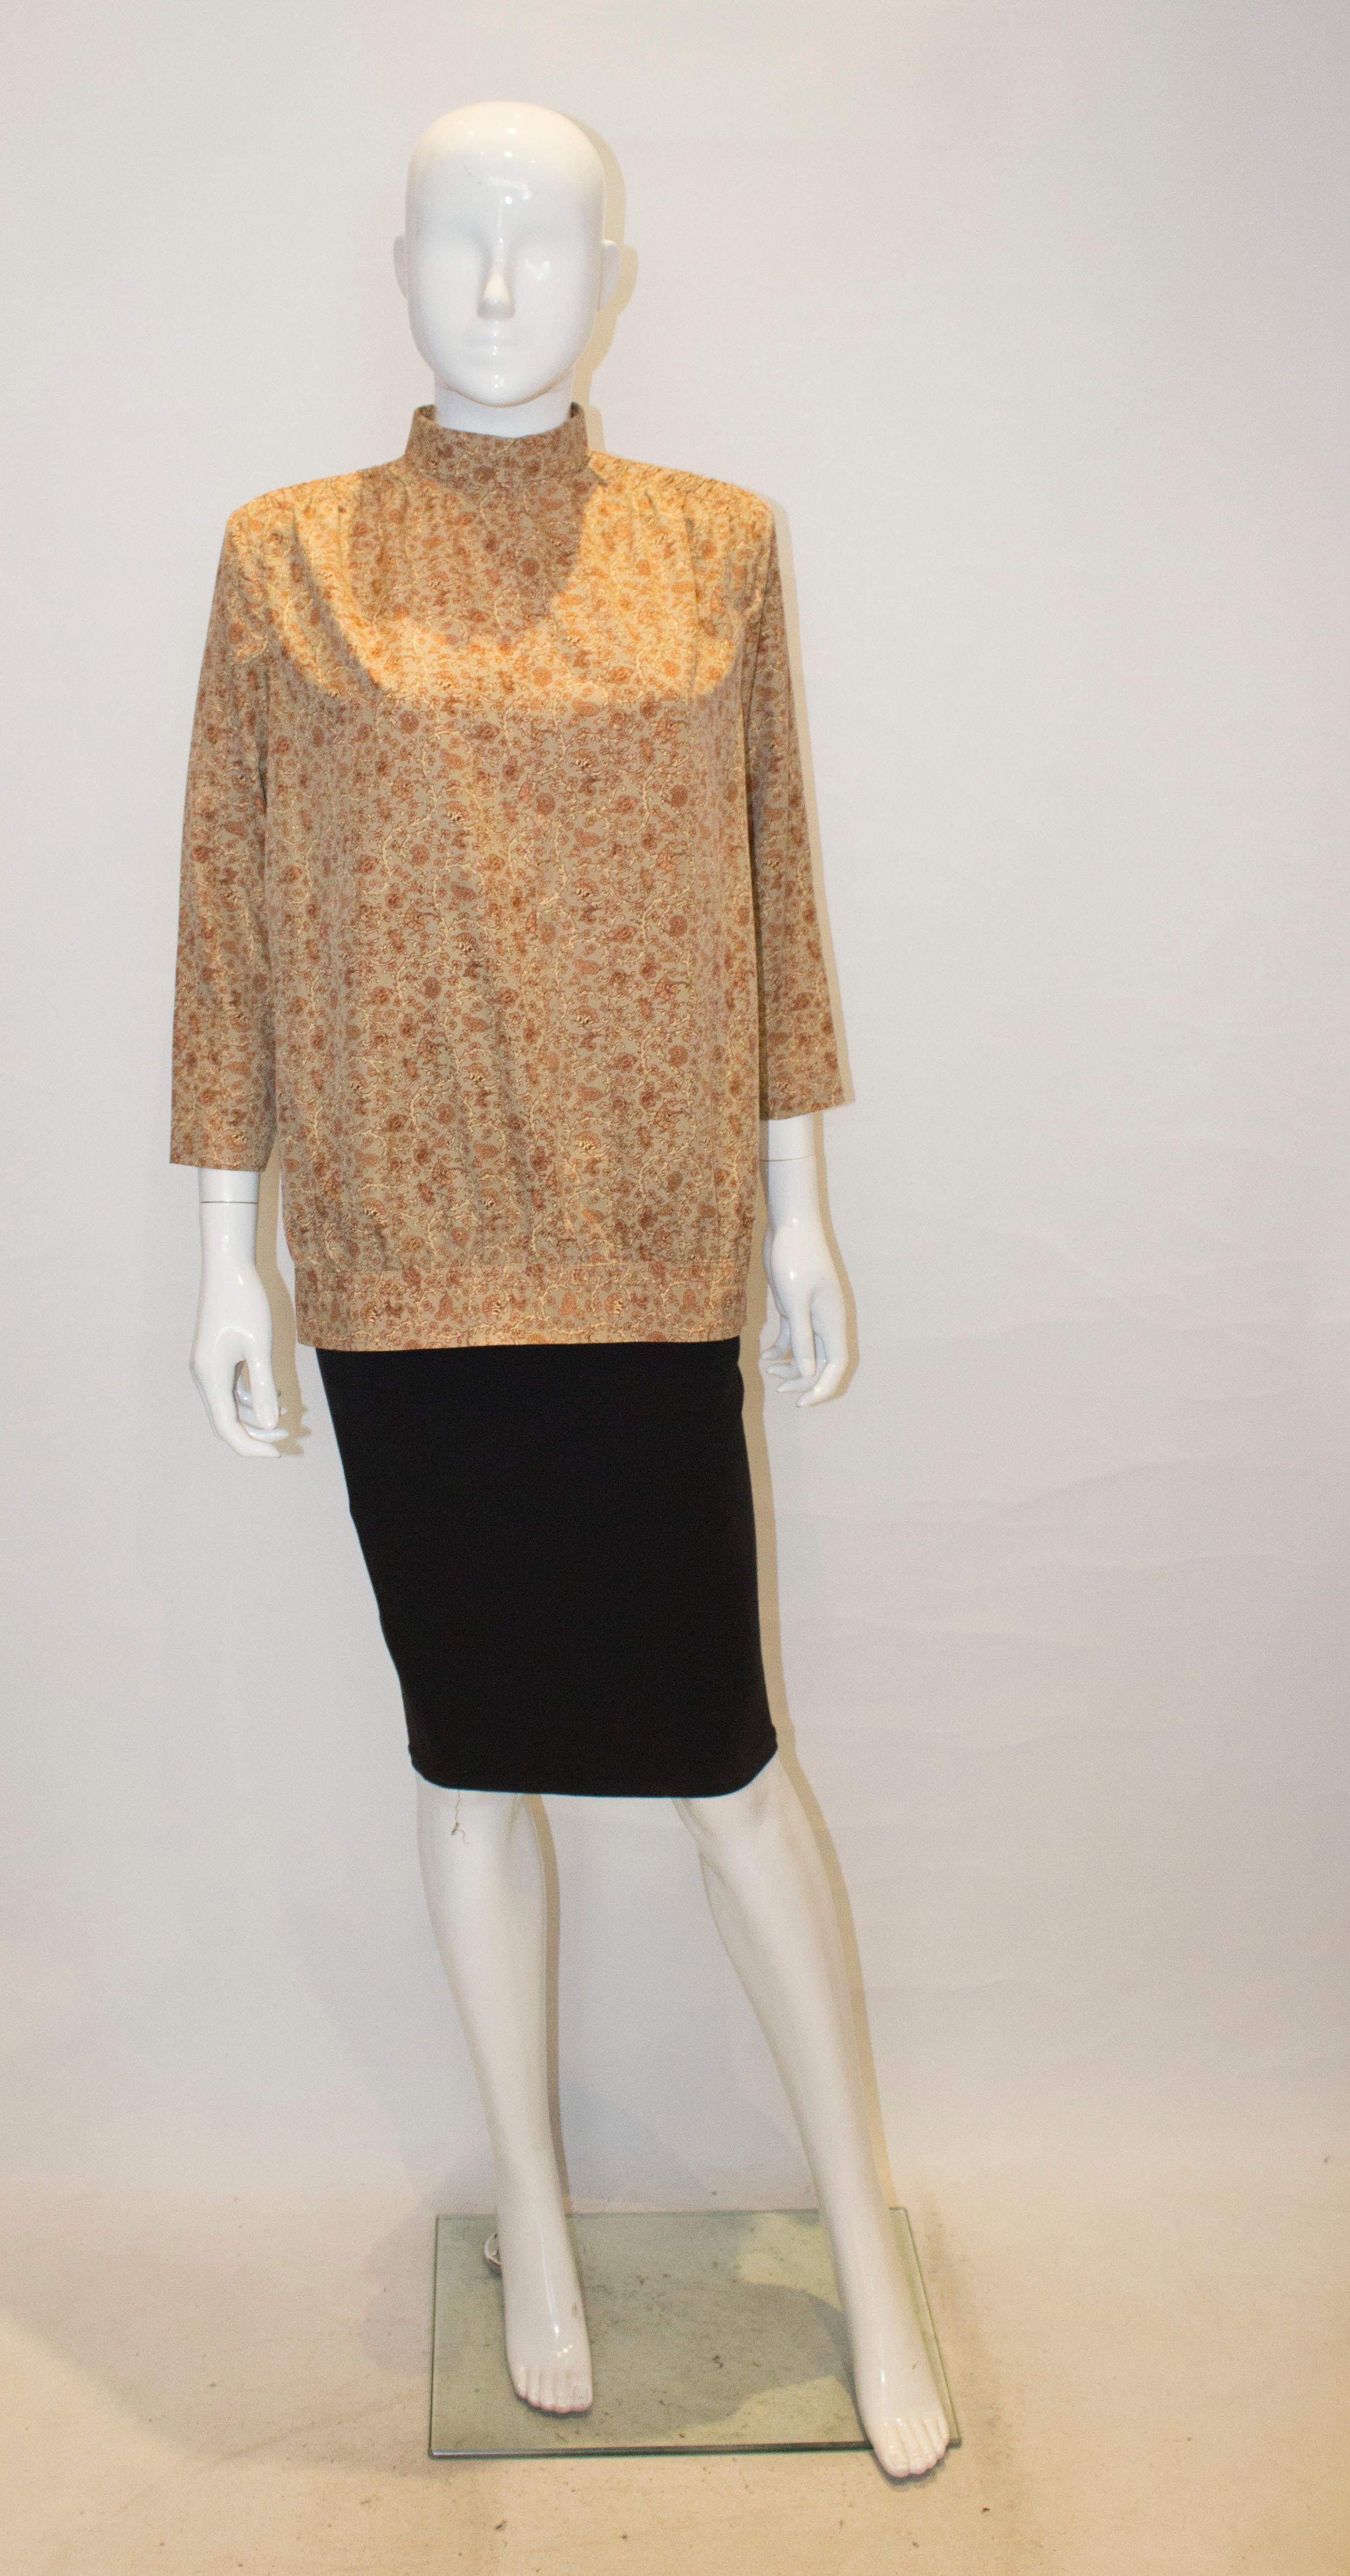 Une jolie blouse vintage de style kossak, dans un tissu floral marron. Le haut est orné d'une fente sur les épaules et d'une fermeture à crochets et à œillets dans le dos.